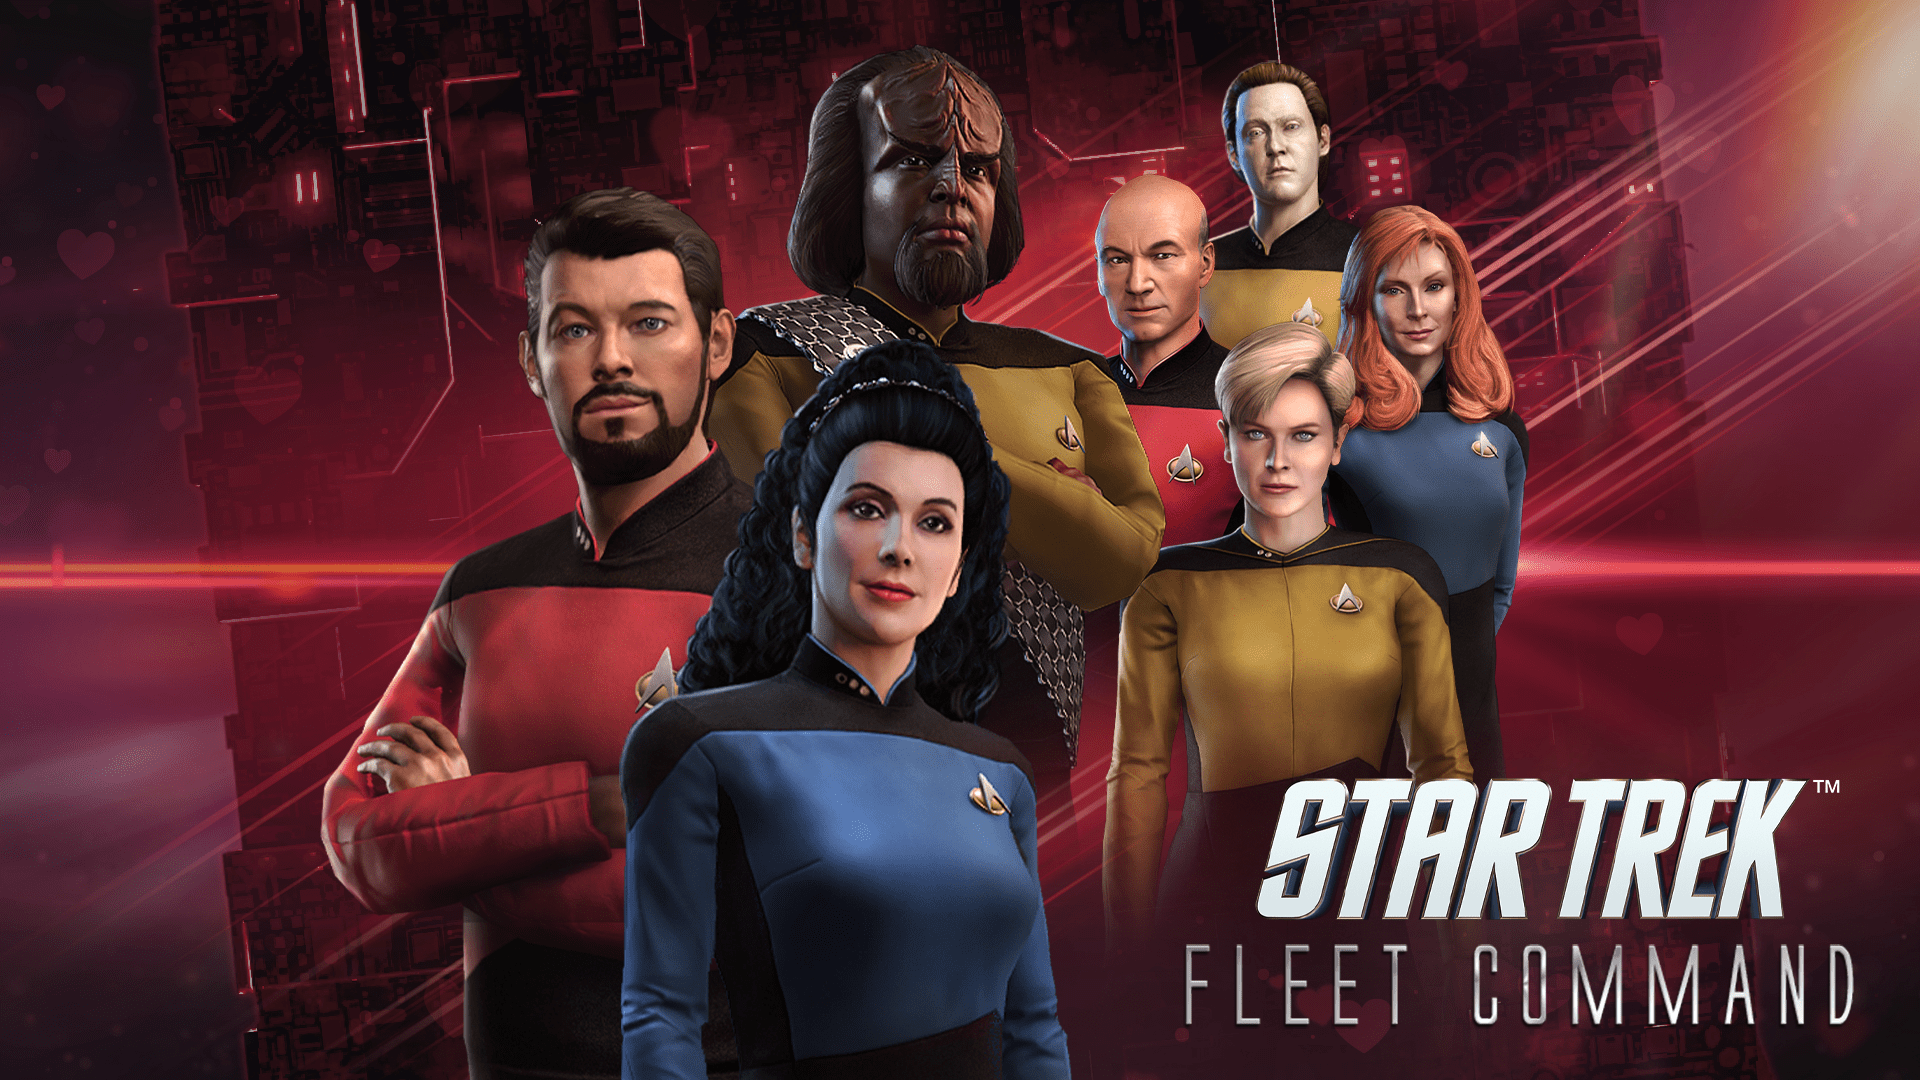 Star Trek: Star Trek Day 2023